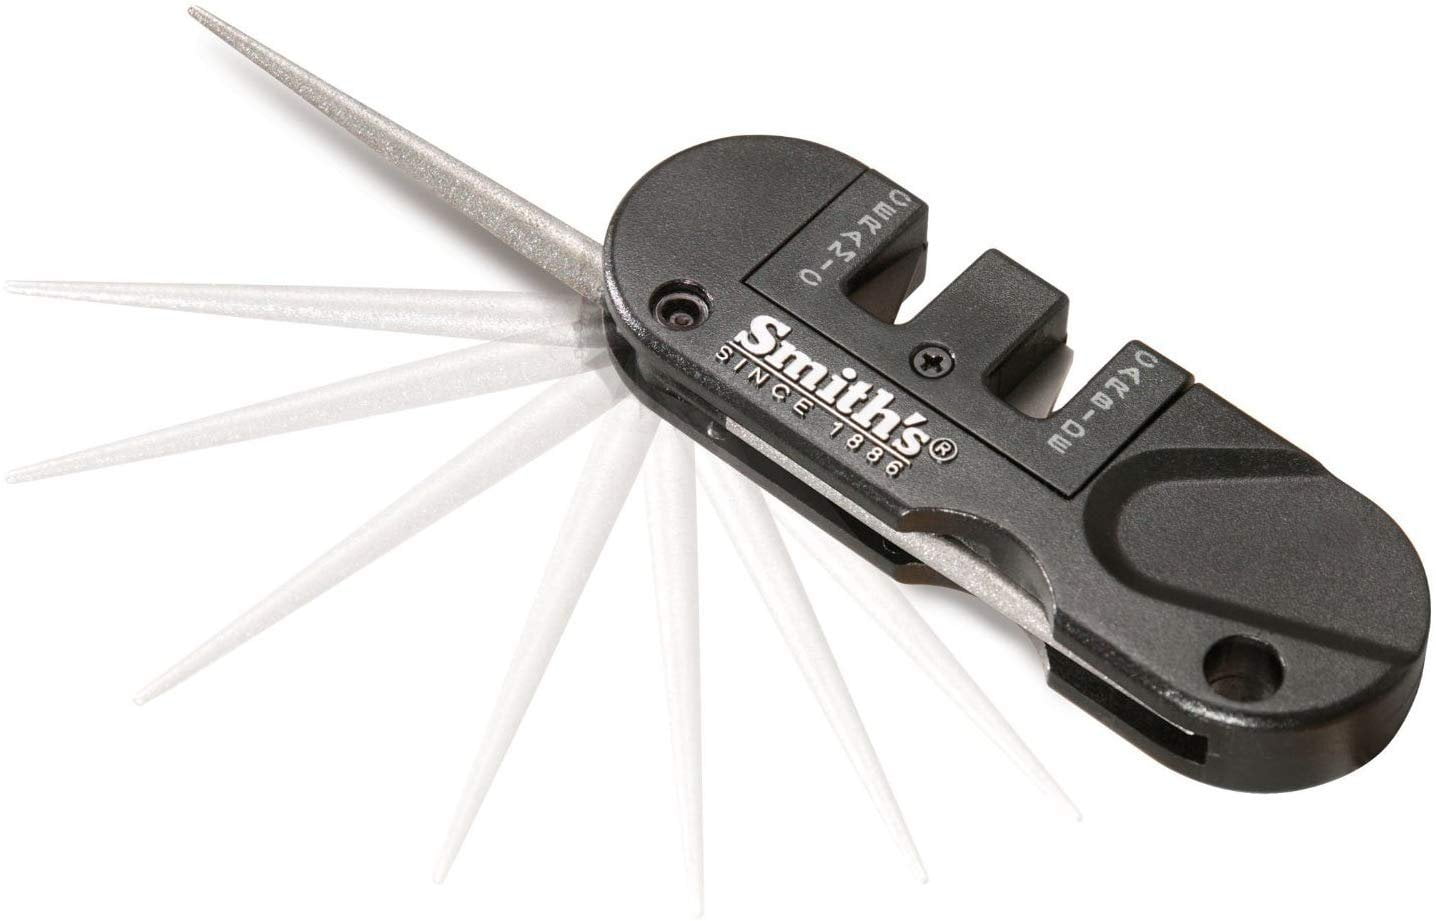  Smith's 50979 Pocket Pal Tactical Knife Sharpener - Black - 2  Stage Sharpener & Diamond Sharpening Rod - Pocket Clip - Outdoor Hunting  Knife & Hook Sharpener - Compact & Lightweight : Home & Kitchen